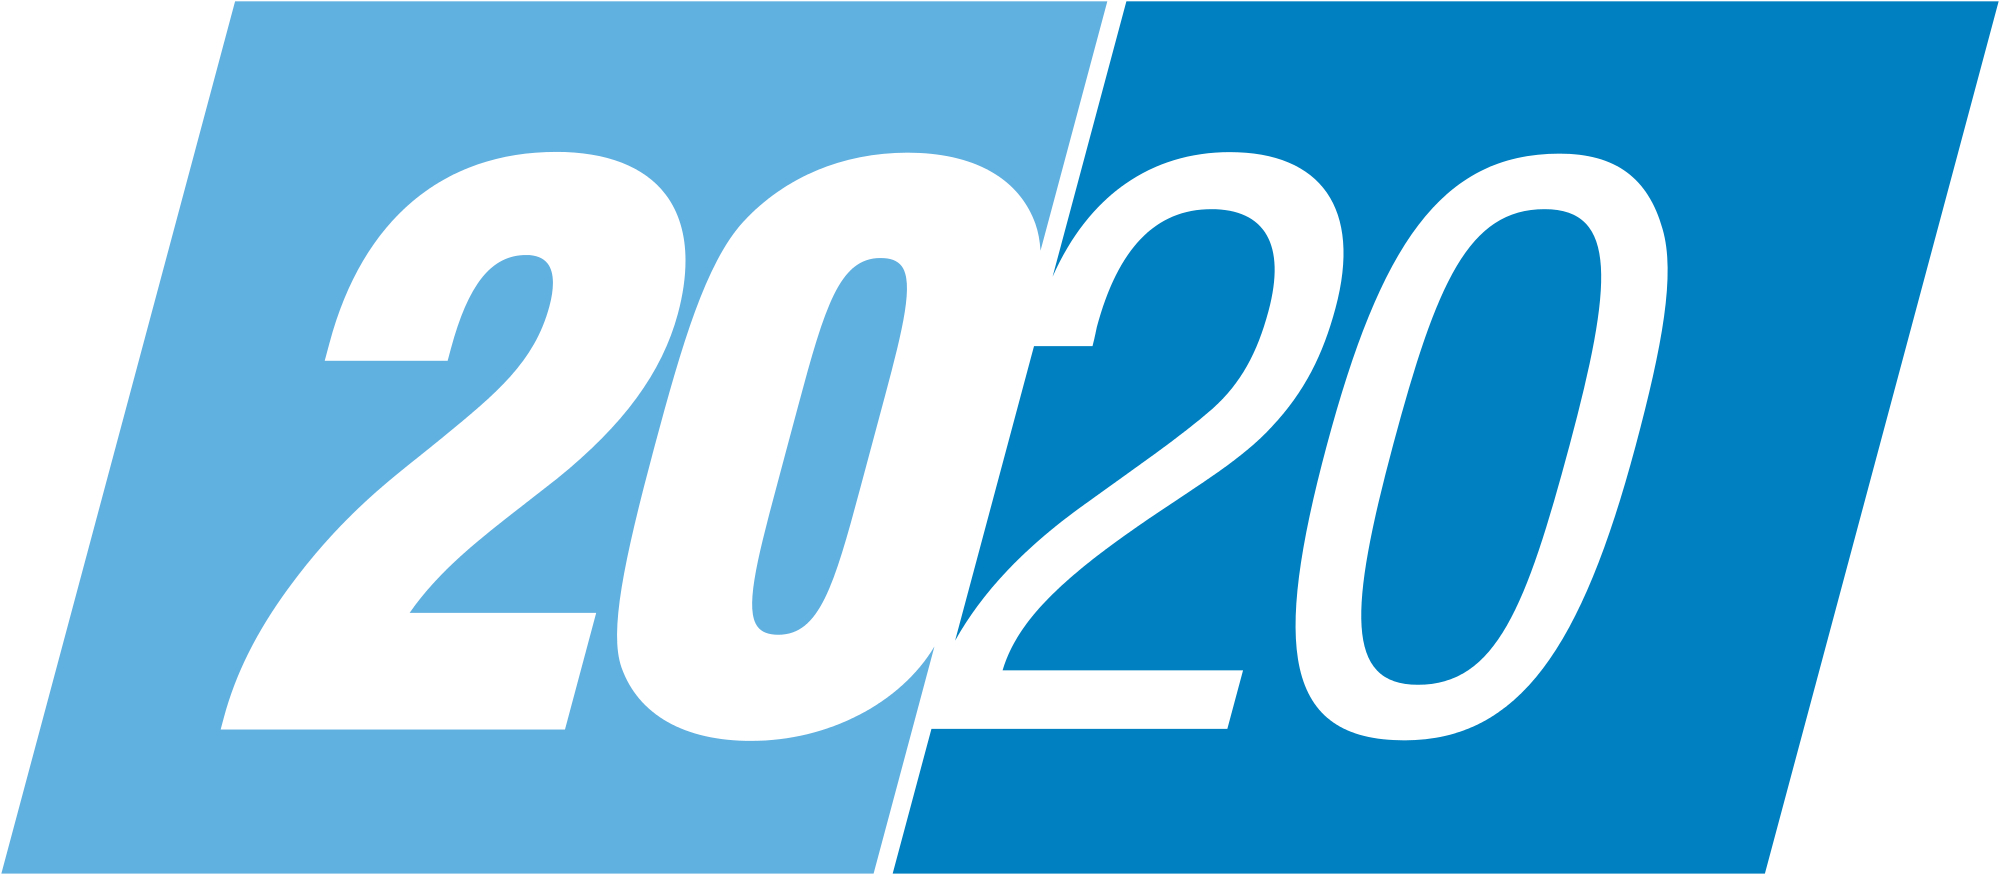 Tahun 2020